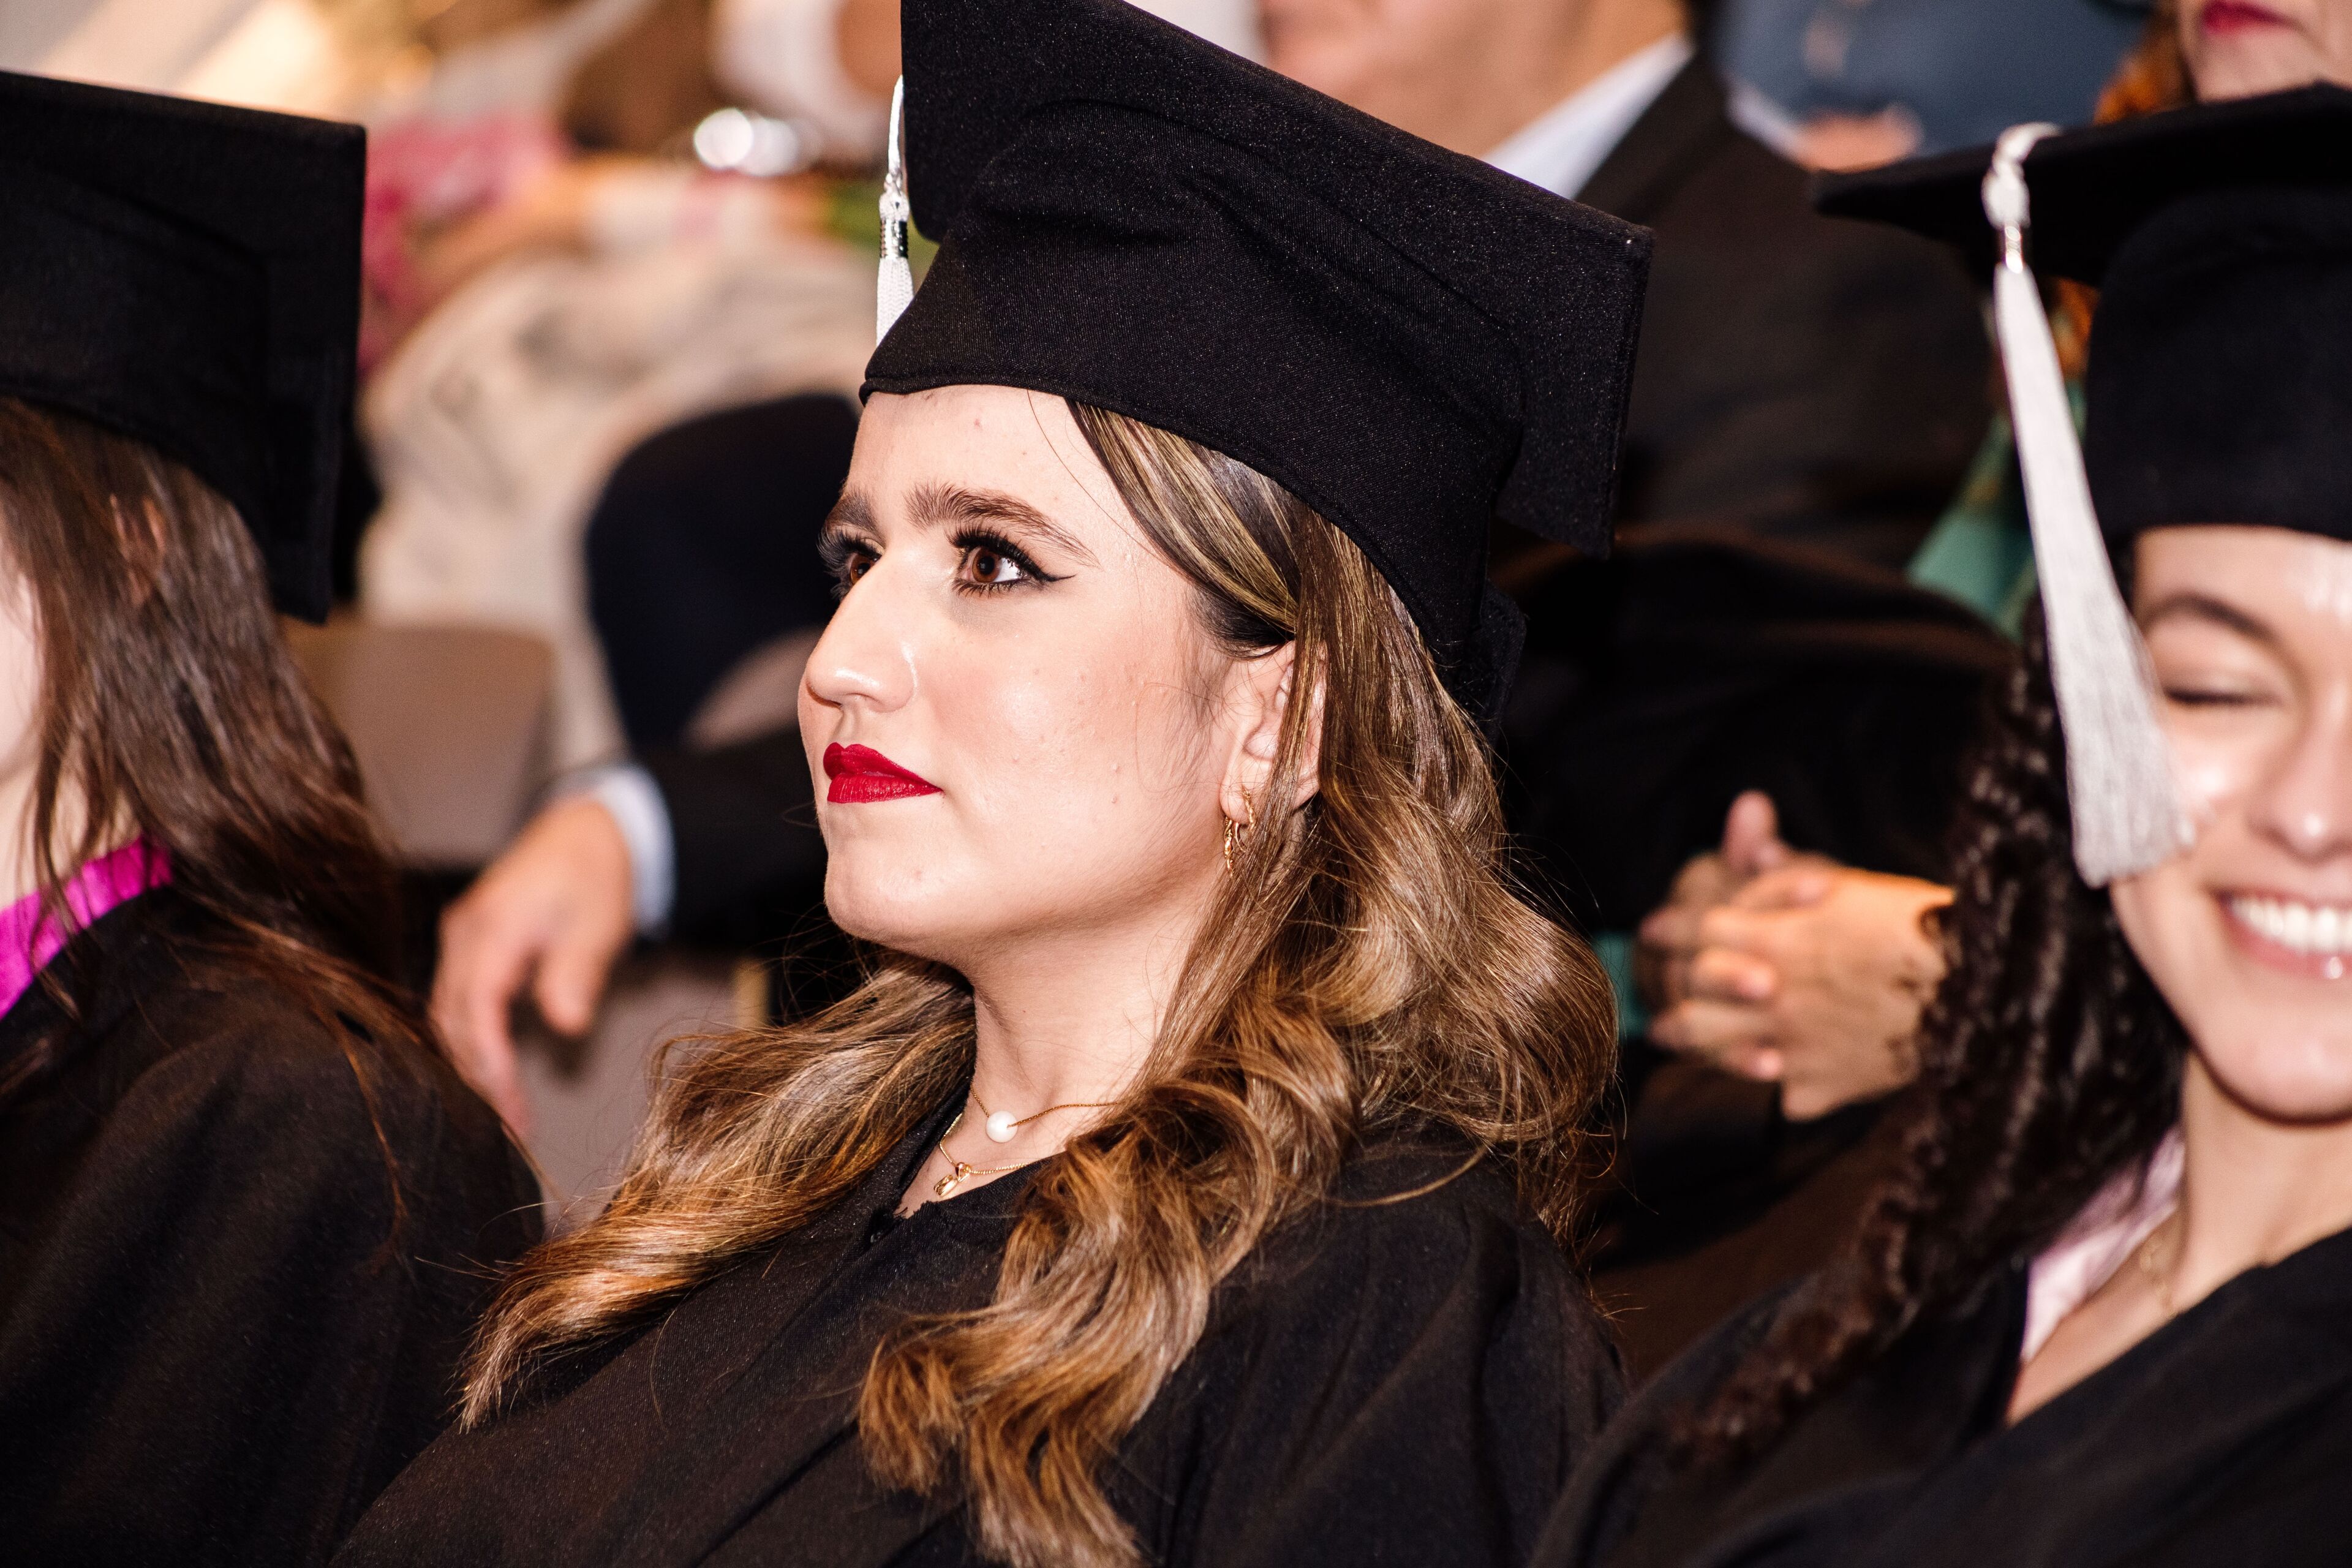 Una graduada en toga y birrete tradicionales, adornada con un maquillaje audaz, refleja una sensación de logro y orgullo durante la ceremonia de graduación.